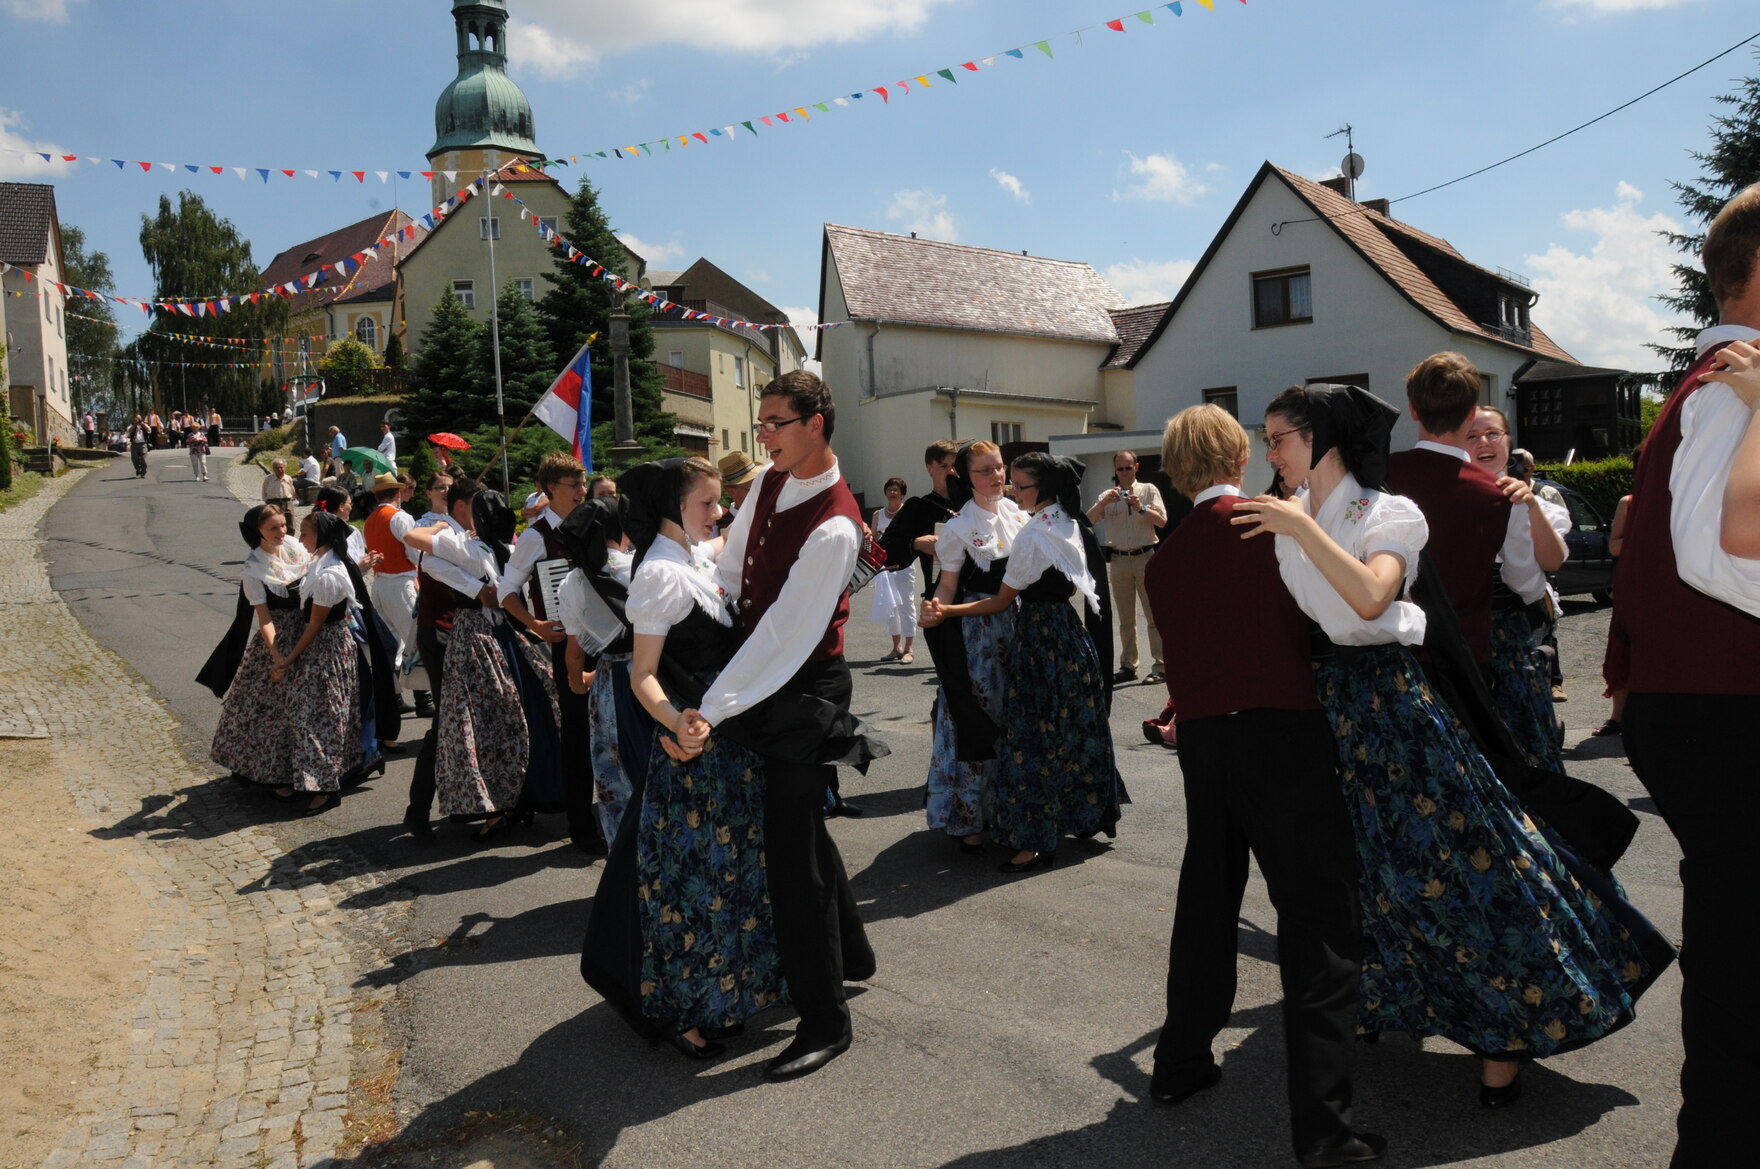 Sorbische Tänzer in traditioneller katholischer Tracht